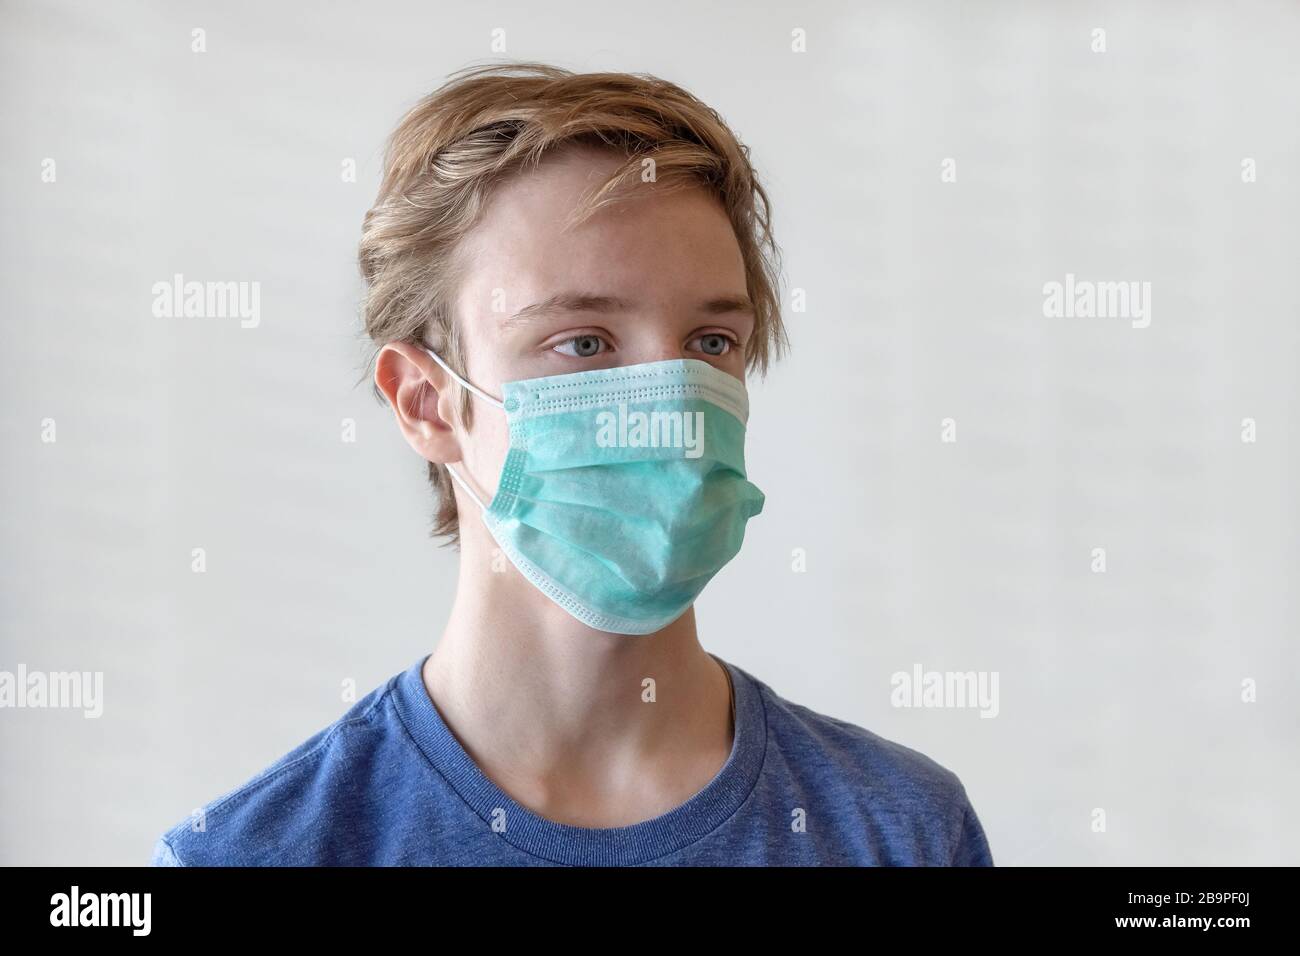 COVID-19 coronavirus. Portrait d'un jeune homme de 17 ans, dans un masque médical. Banque D'Images